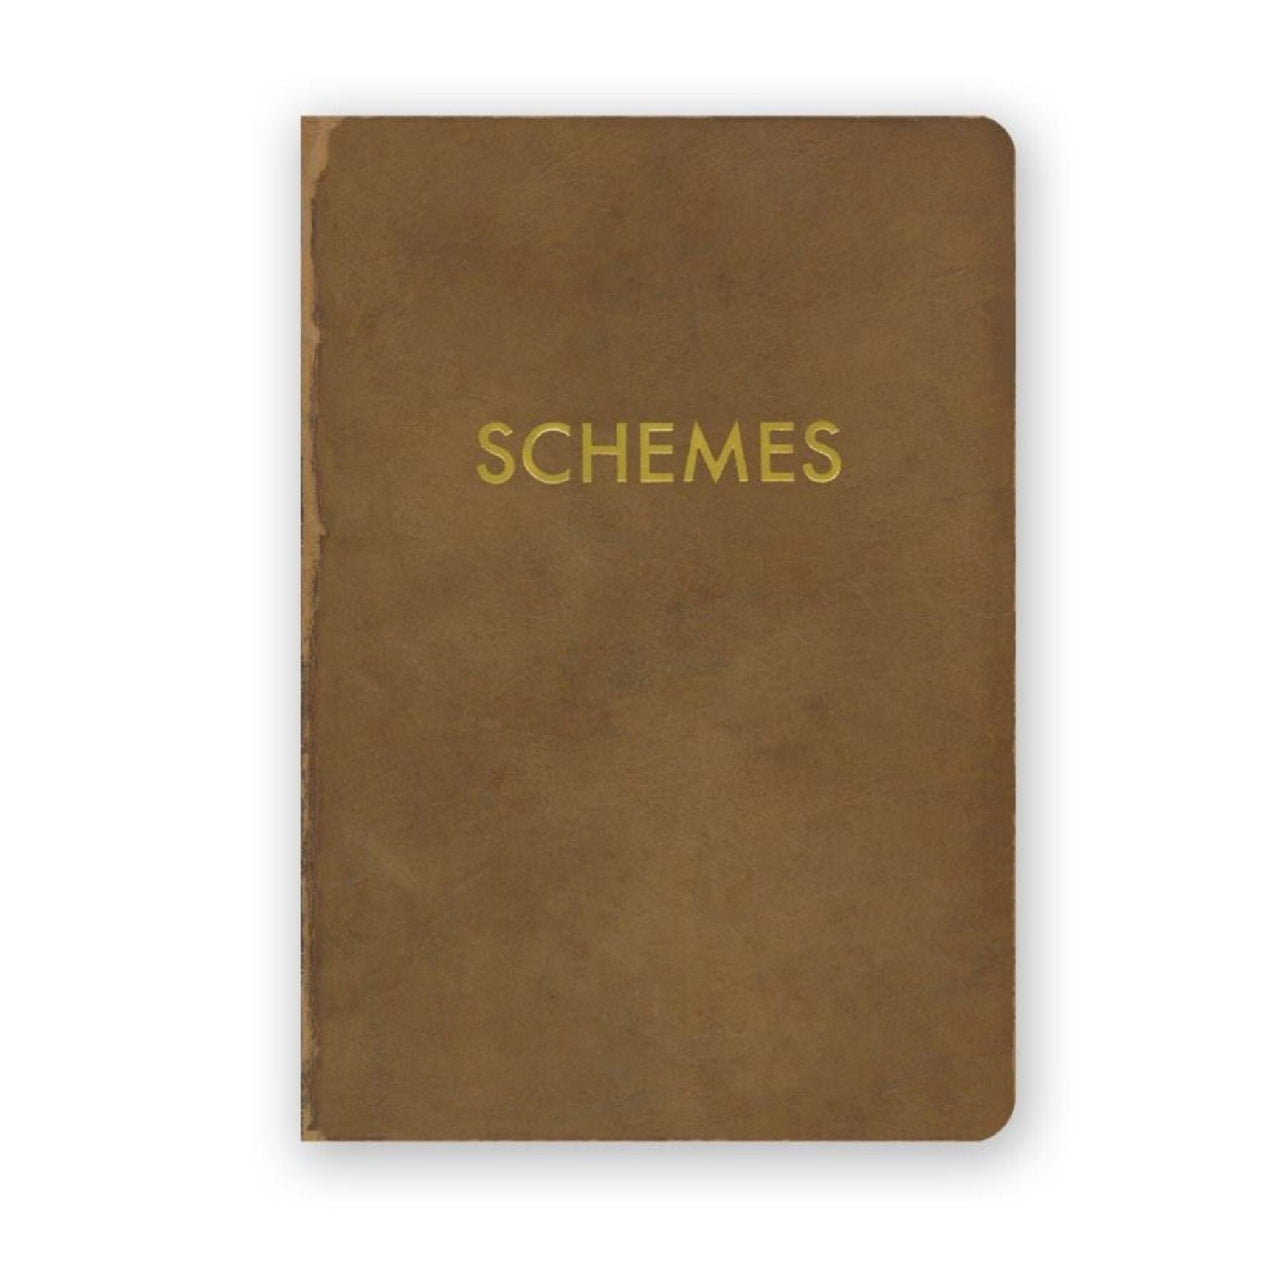 Schemes Journal - Small